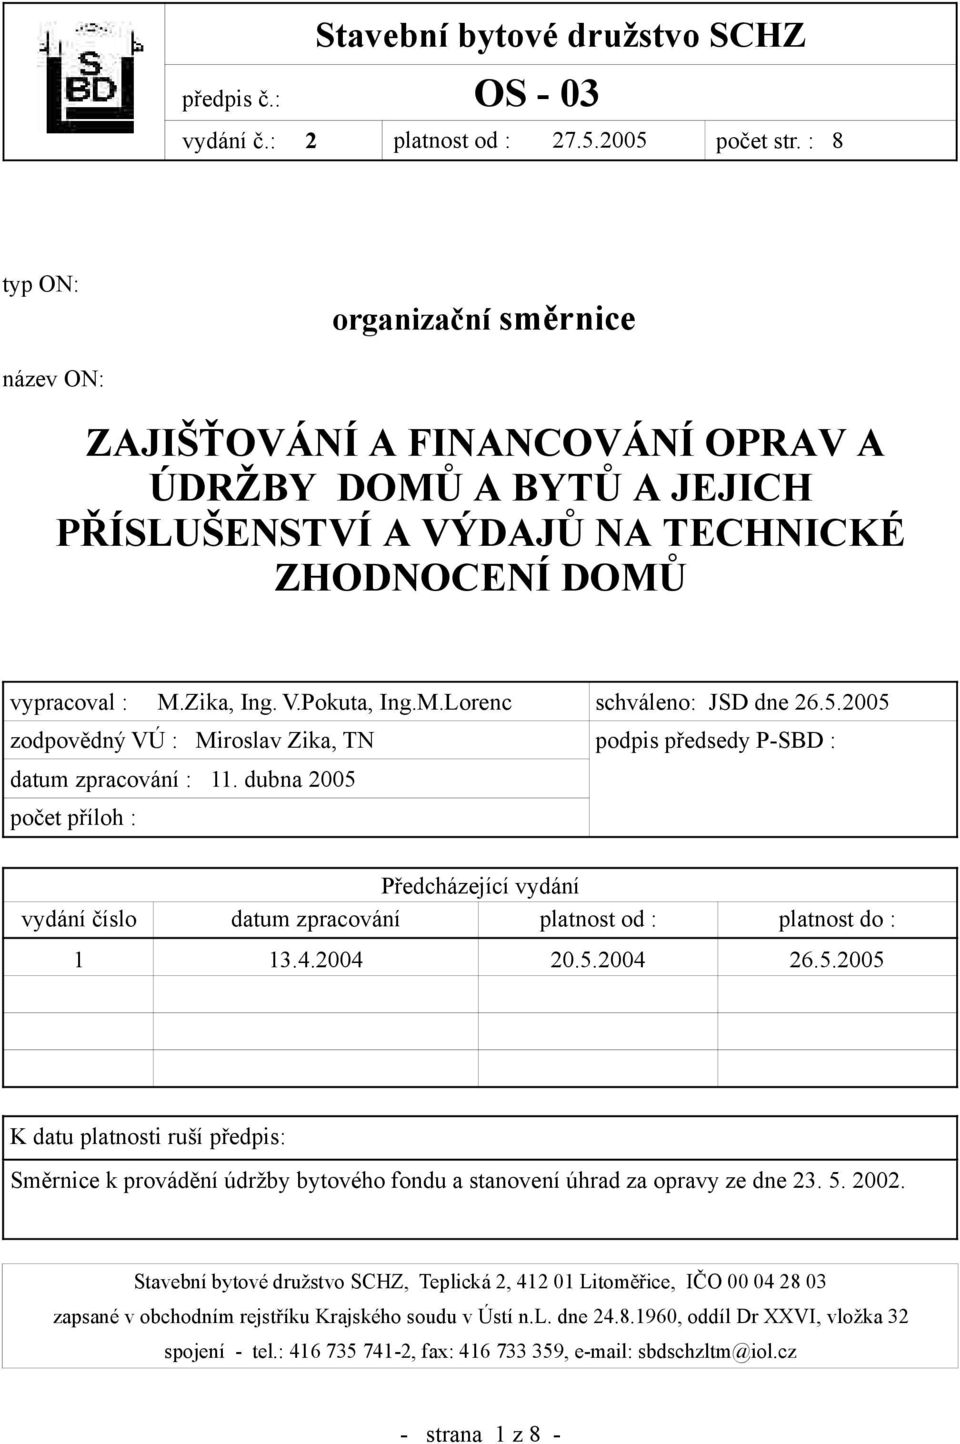 5.2005 zodpovědný VÚ : Miroslav Zika, TN podpis předsedy P-SBD : datum zpracování : 11. dubna 2005 počet příloh : Předcházející vydání vydání číslo datum zpracování platnost od : platnost do : 1 13.4.